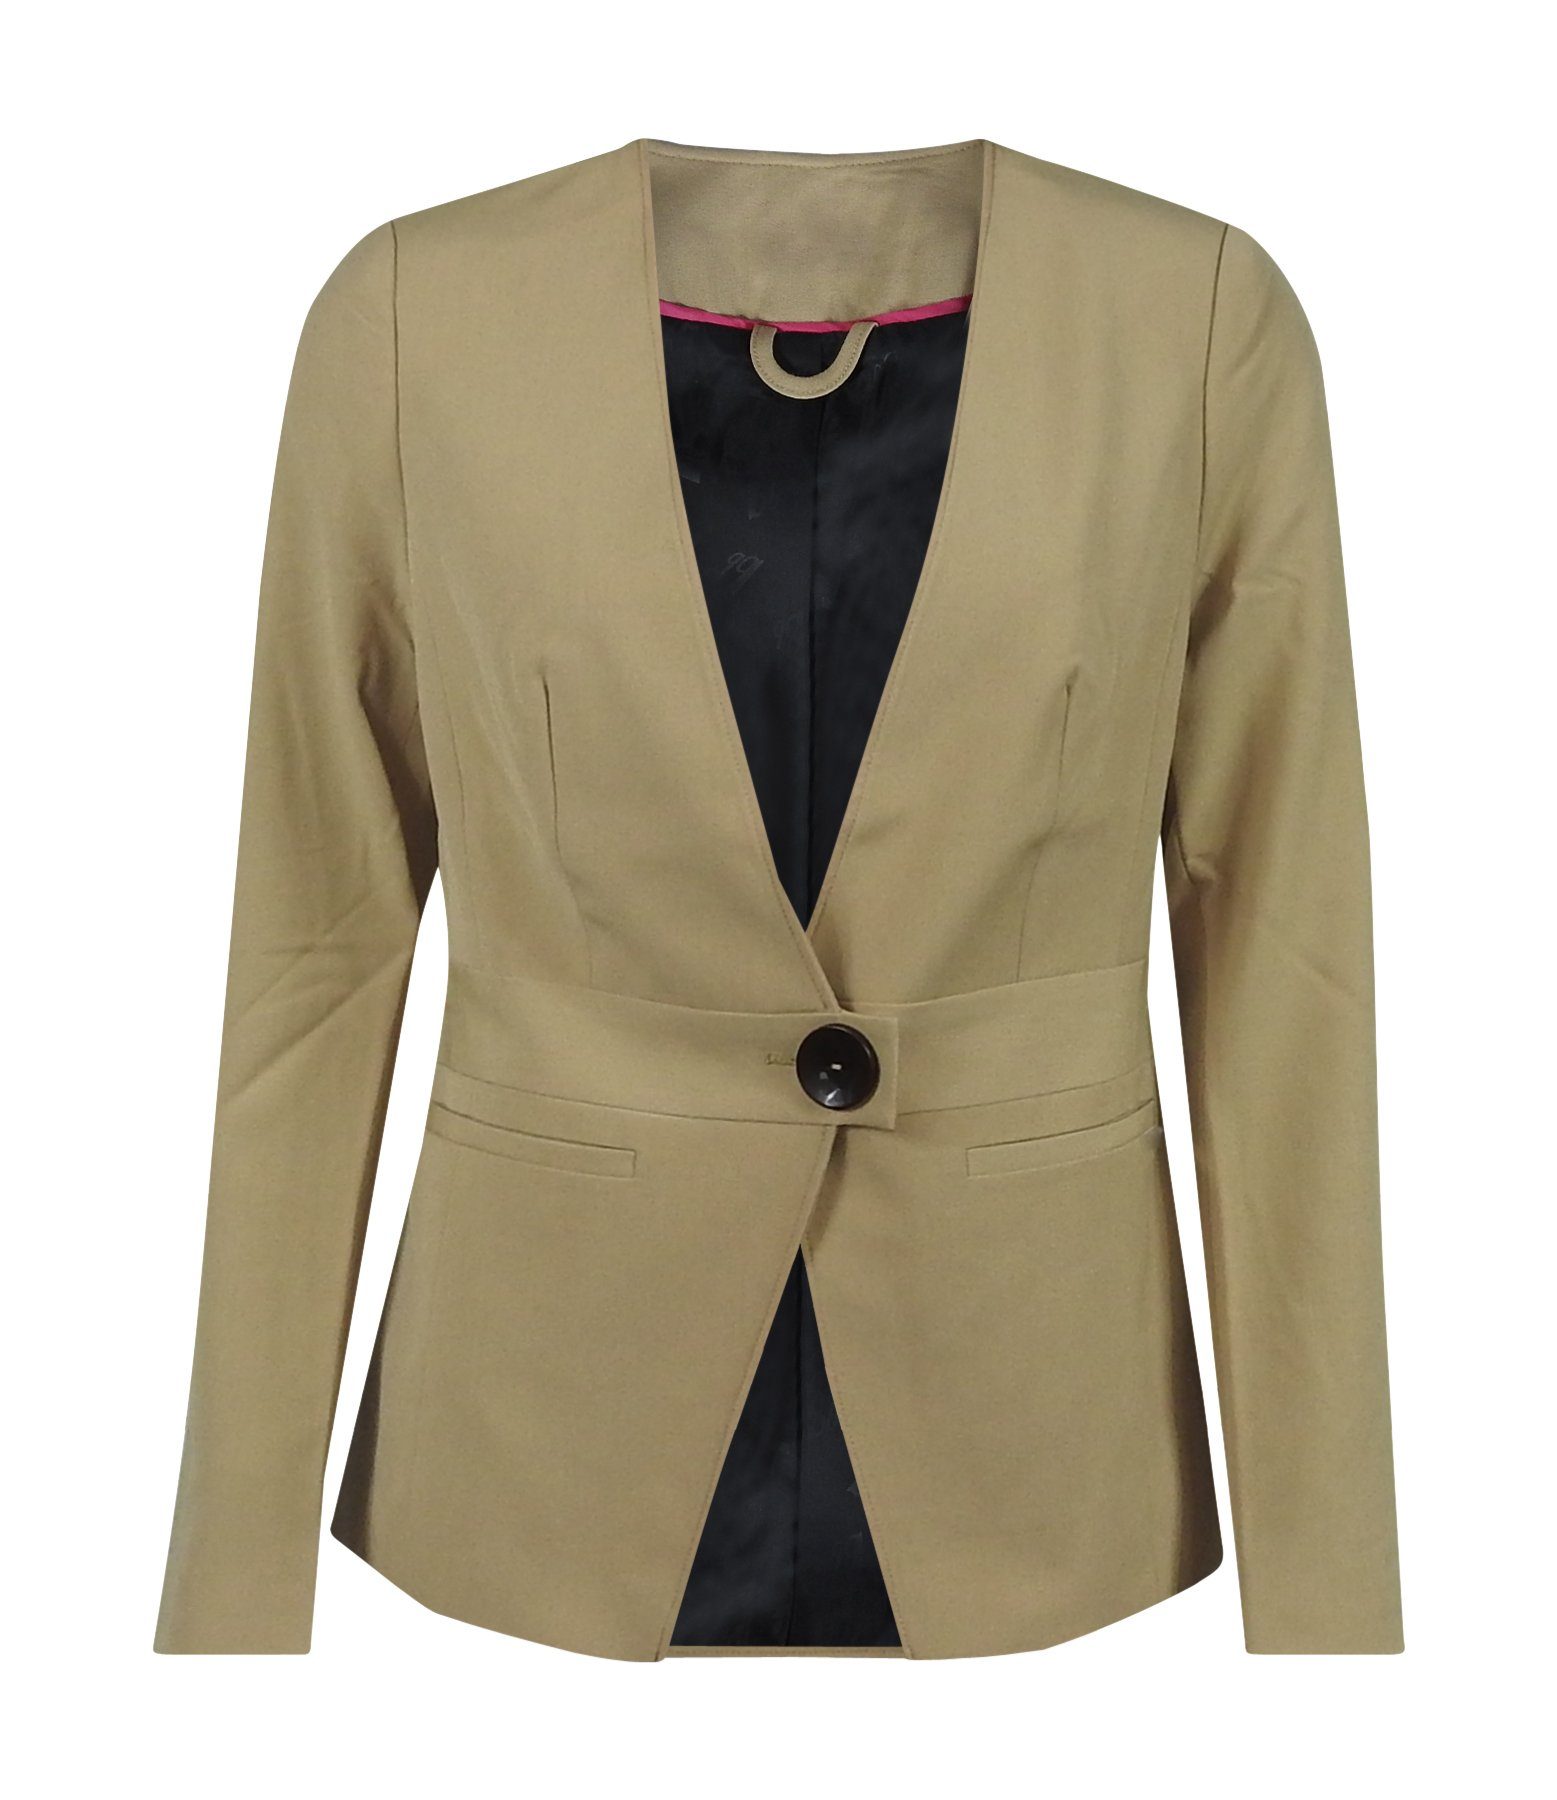 dynamic24 Blazer Casual Damen Business Basic Sakko Jacke kragenlos Jerseyblazer beige